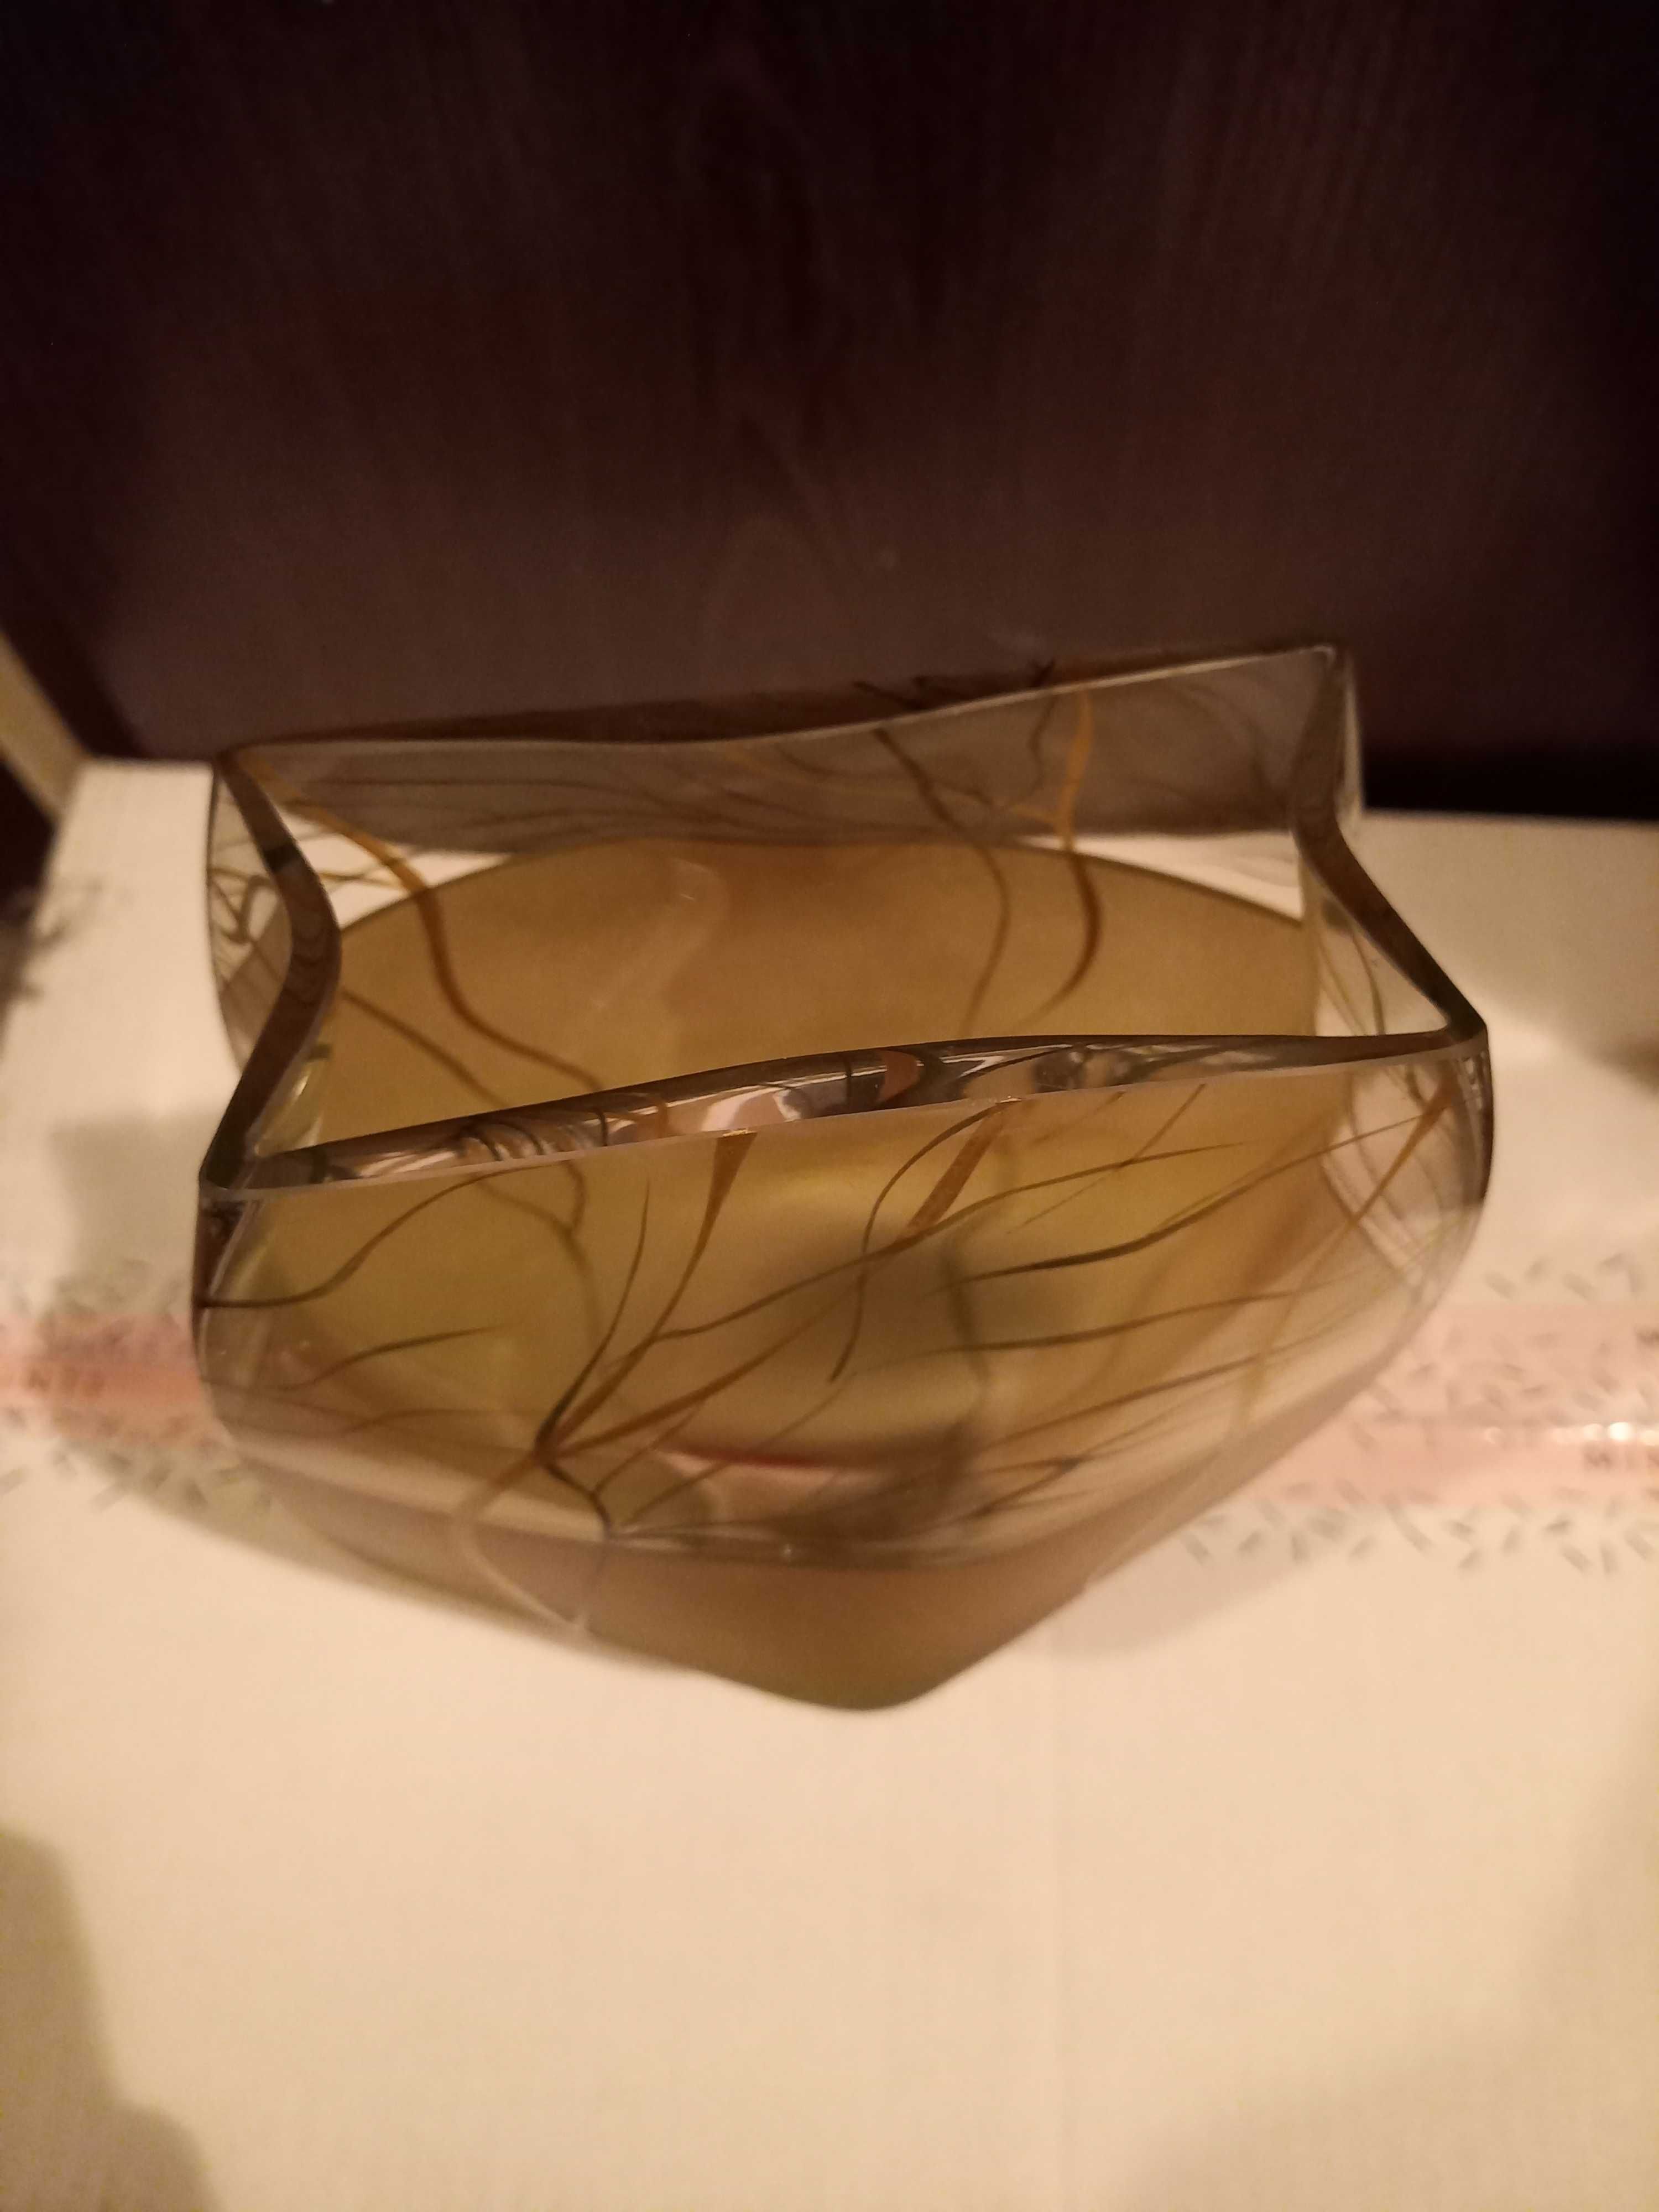 Ciekawy szklany wazon z wzorem gałęzi